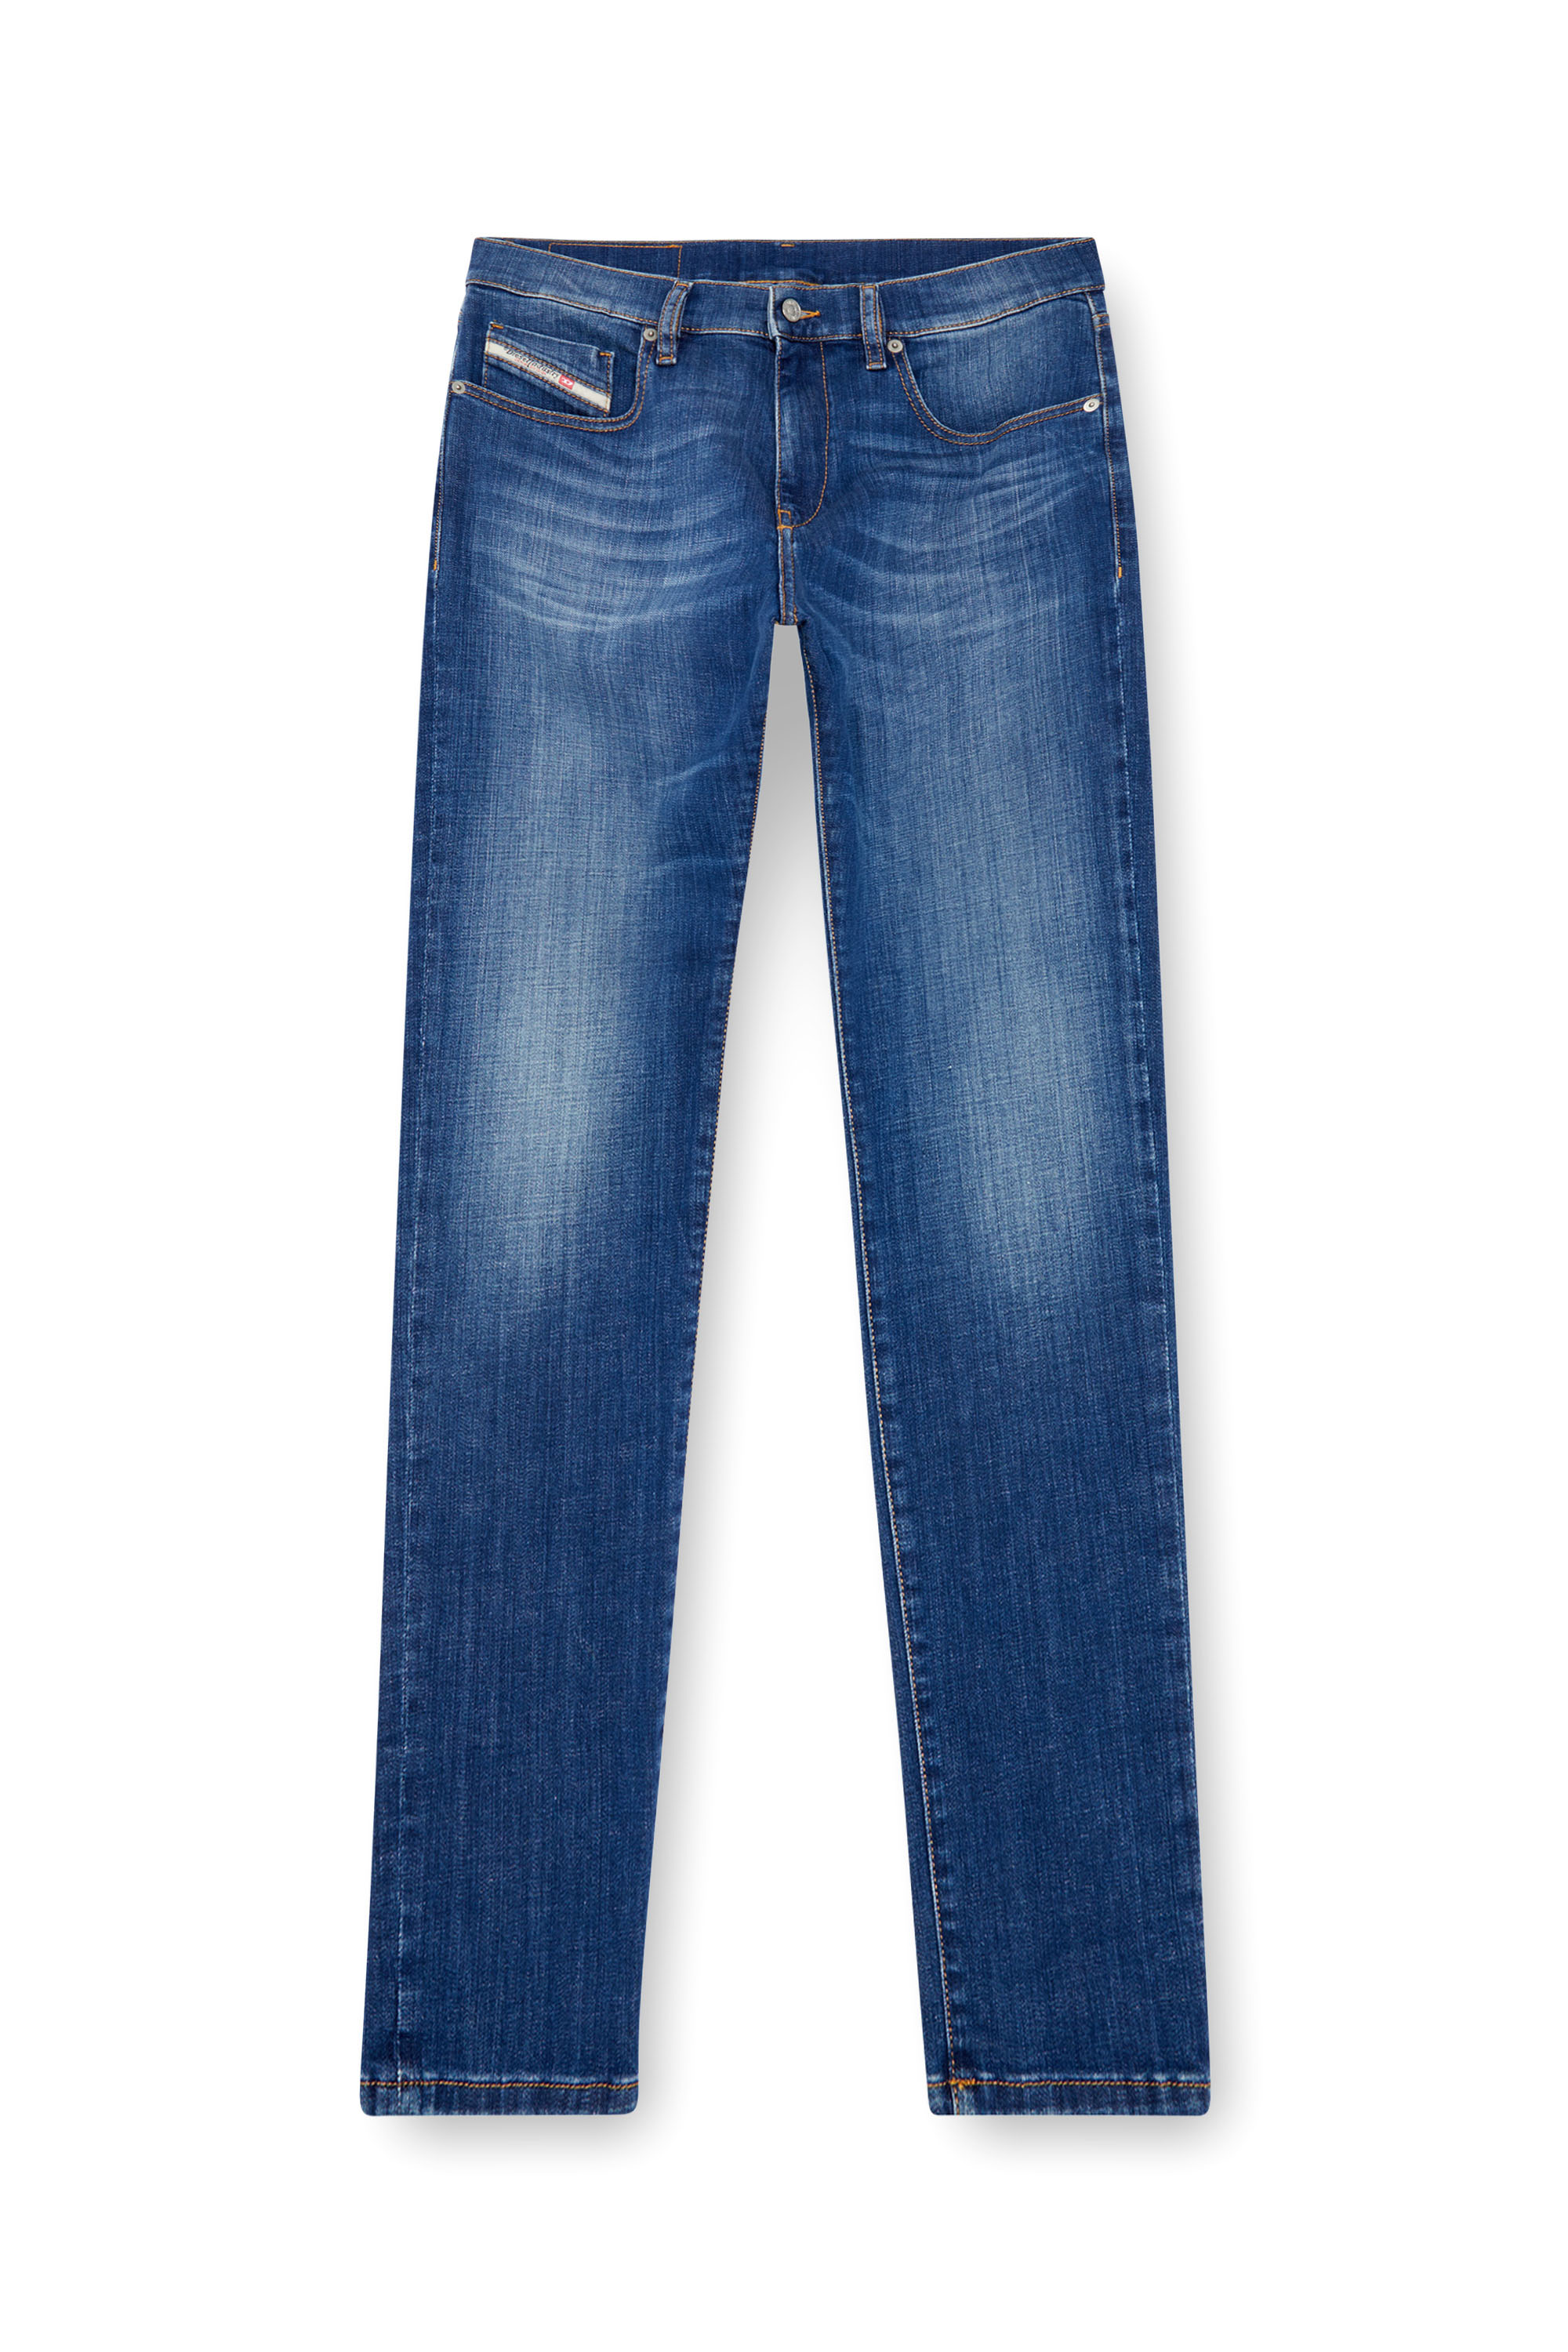 Diesel - Slim Jeans 2019 D-Strukt 09K04, Hombre Slim Jeans - 2019 D-Strukt in Azul marino - Image 3